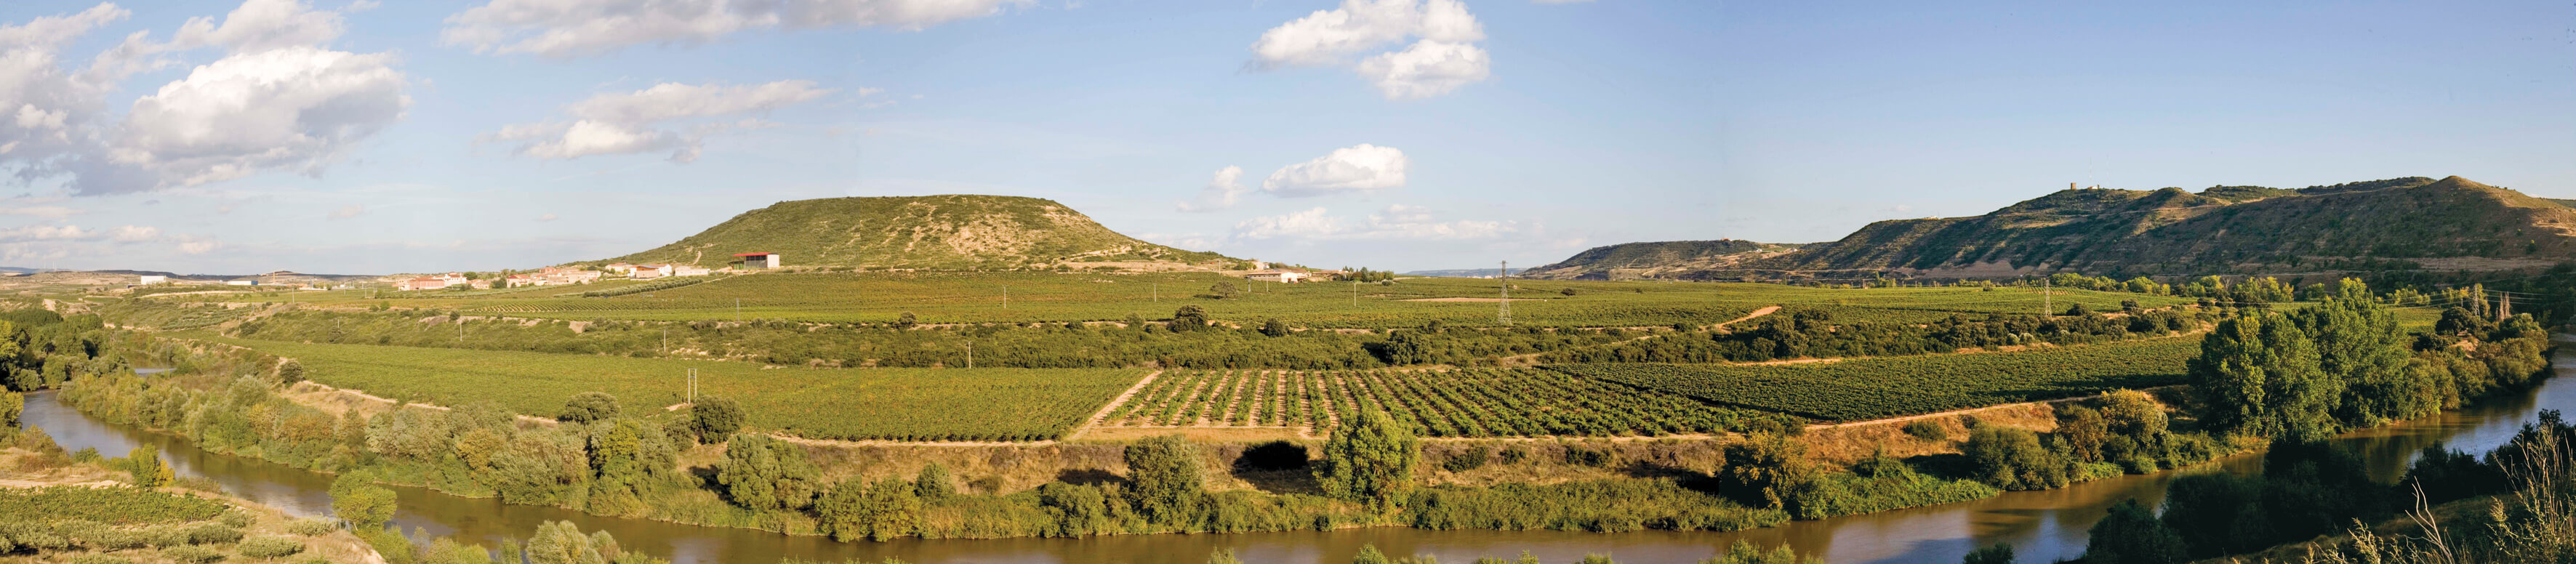 Panaroma of Contino vineyards